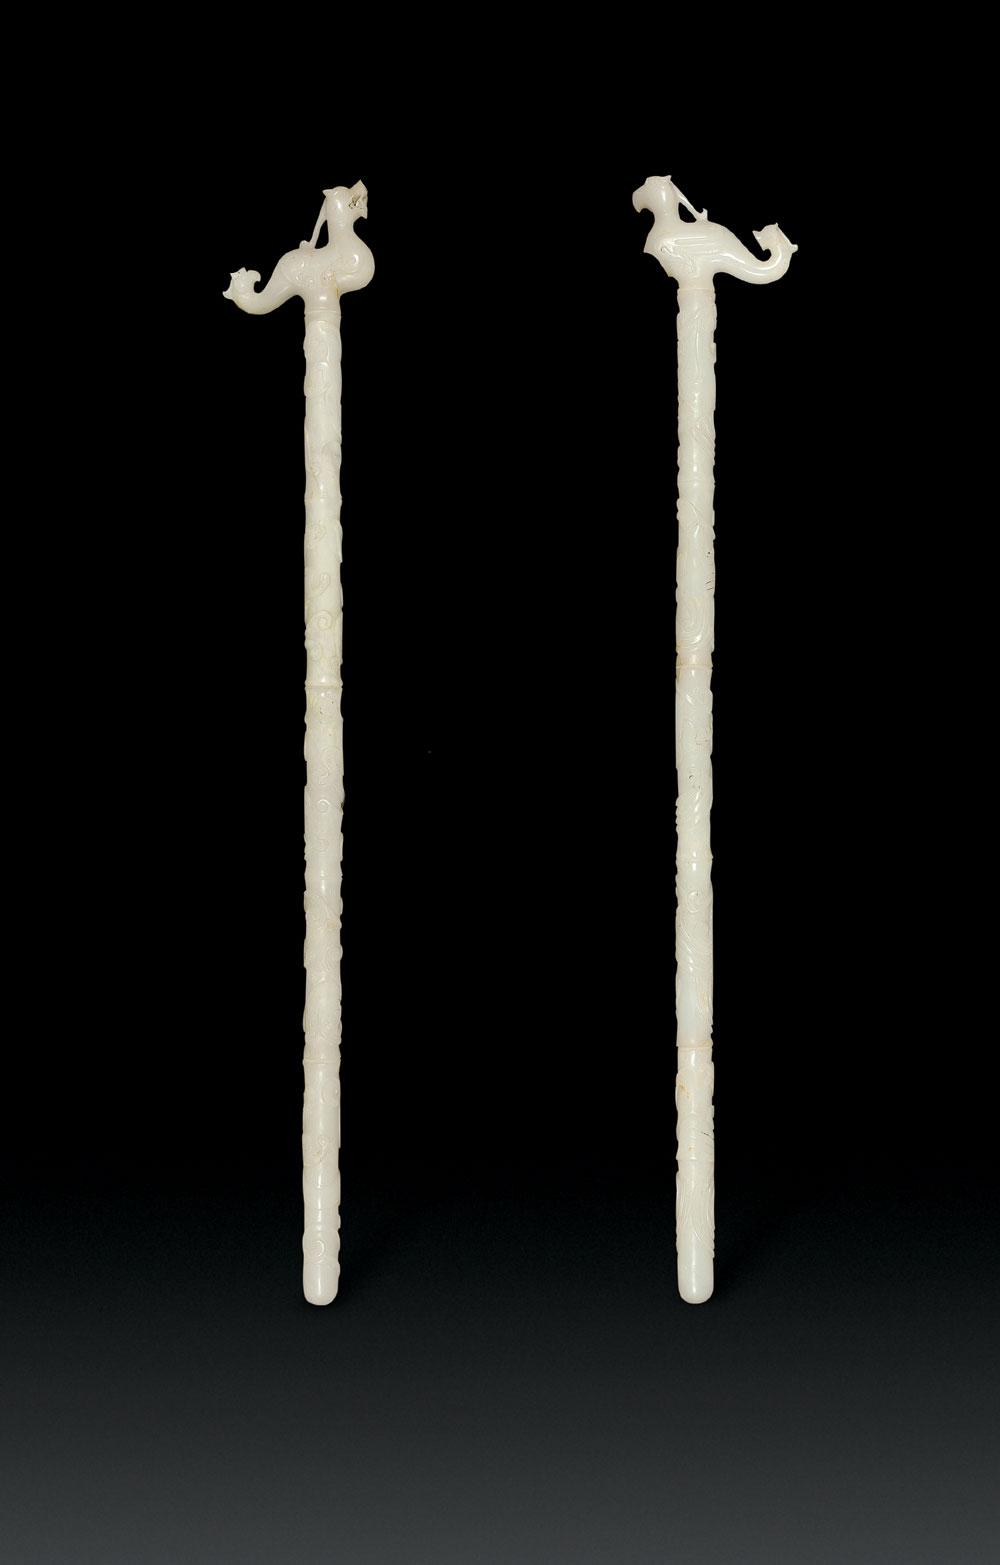 汉代节杖样式图片